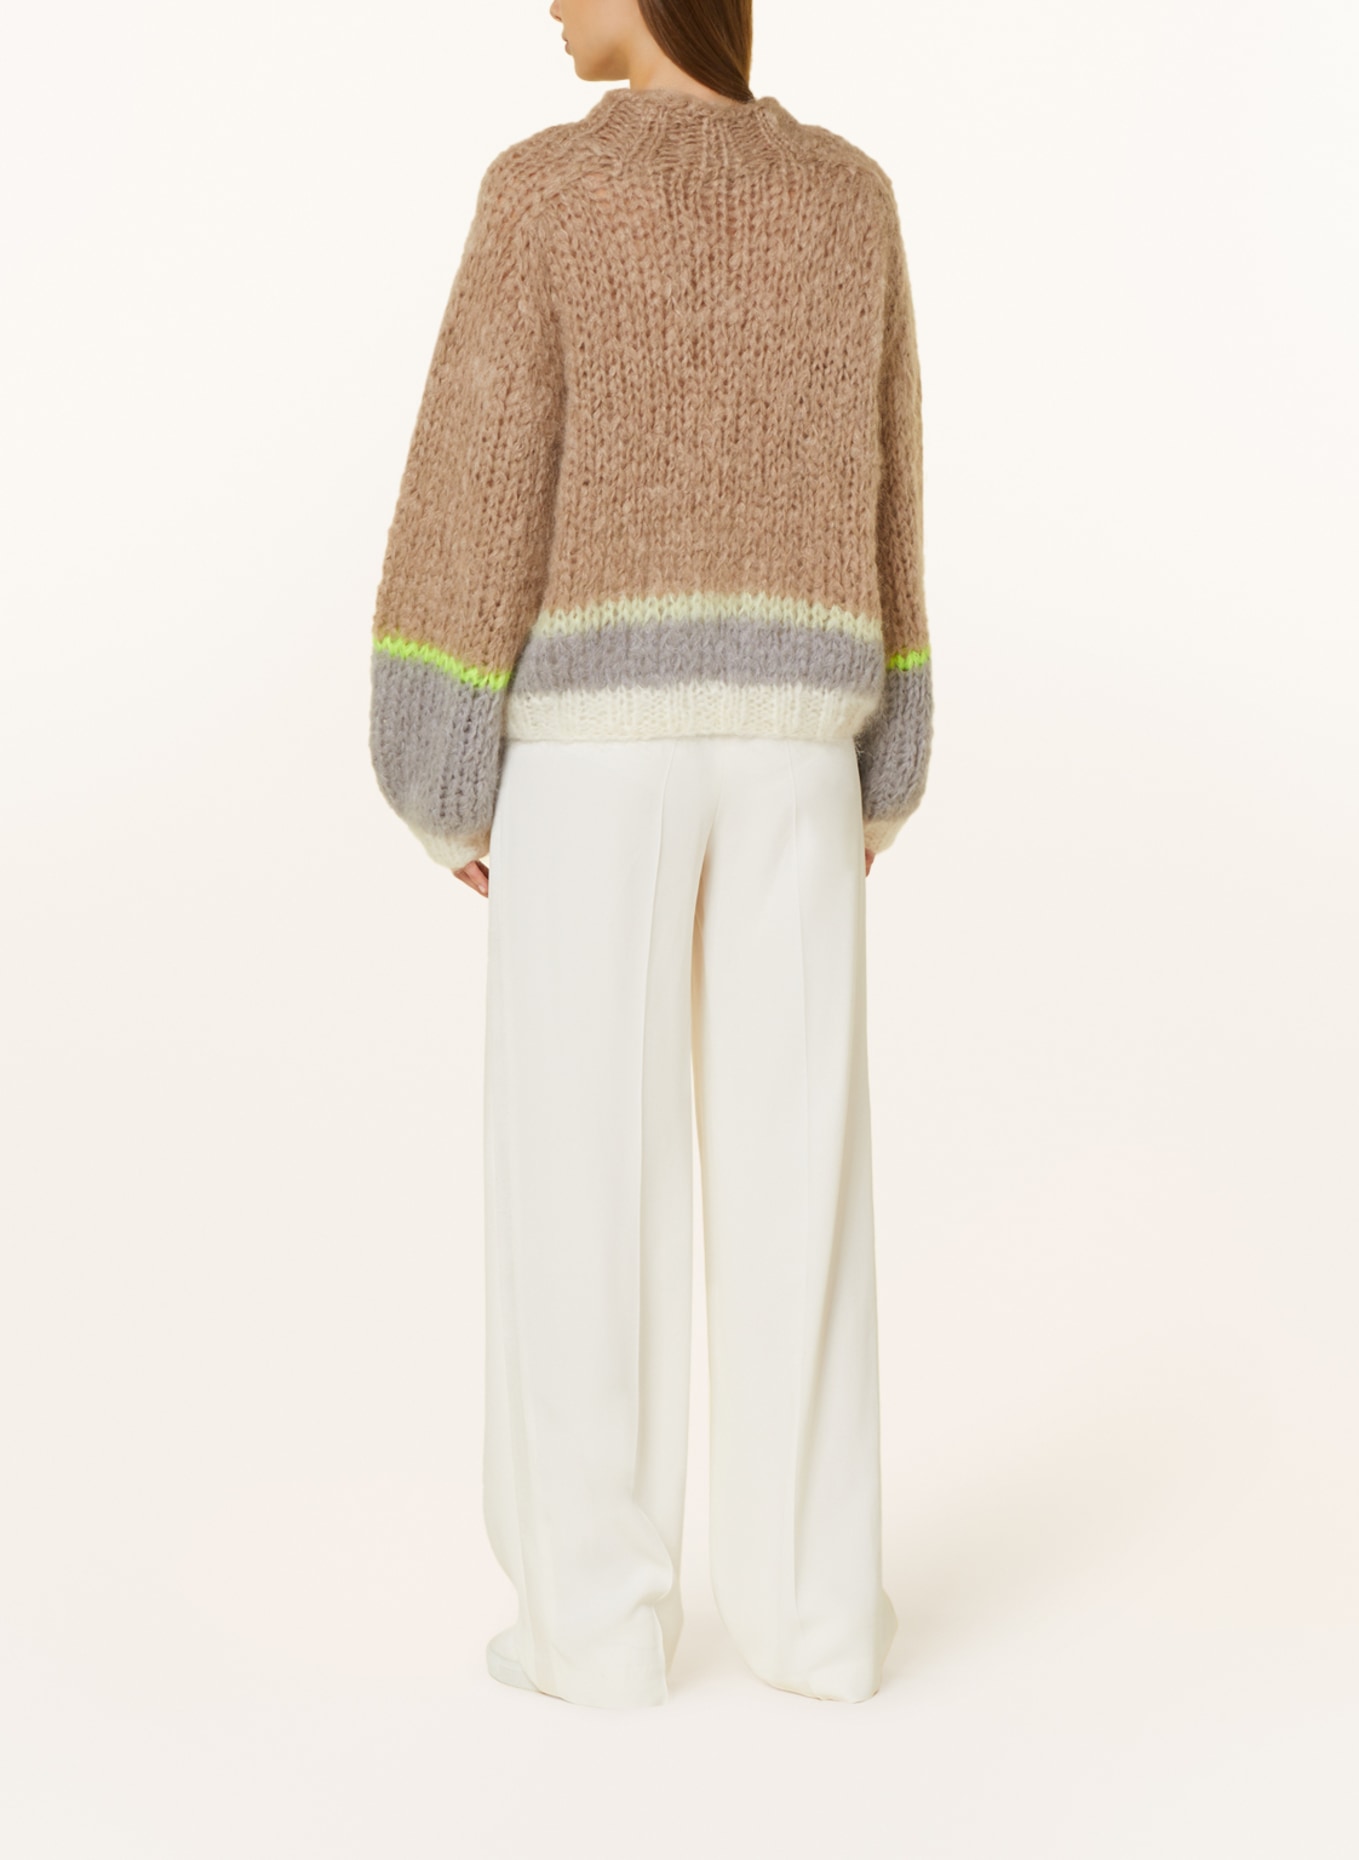 MAIAMI Mohair-Pullover, Farbe: BEIGE/ GRAU (Bild 3)